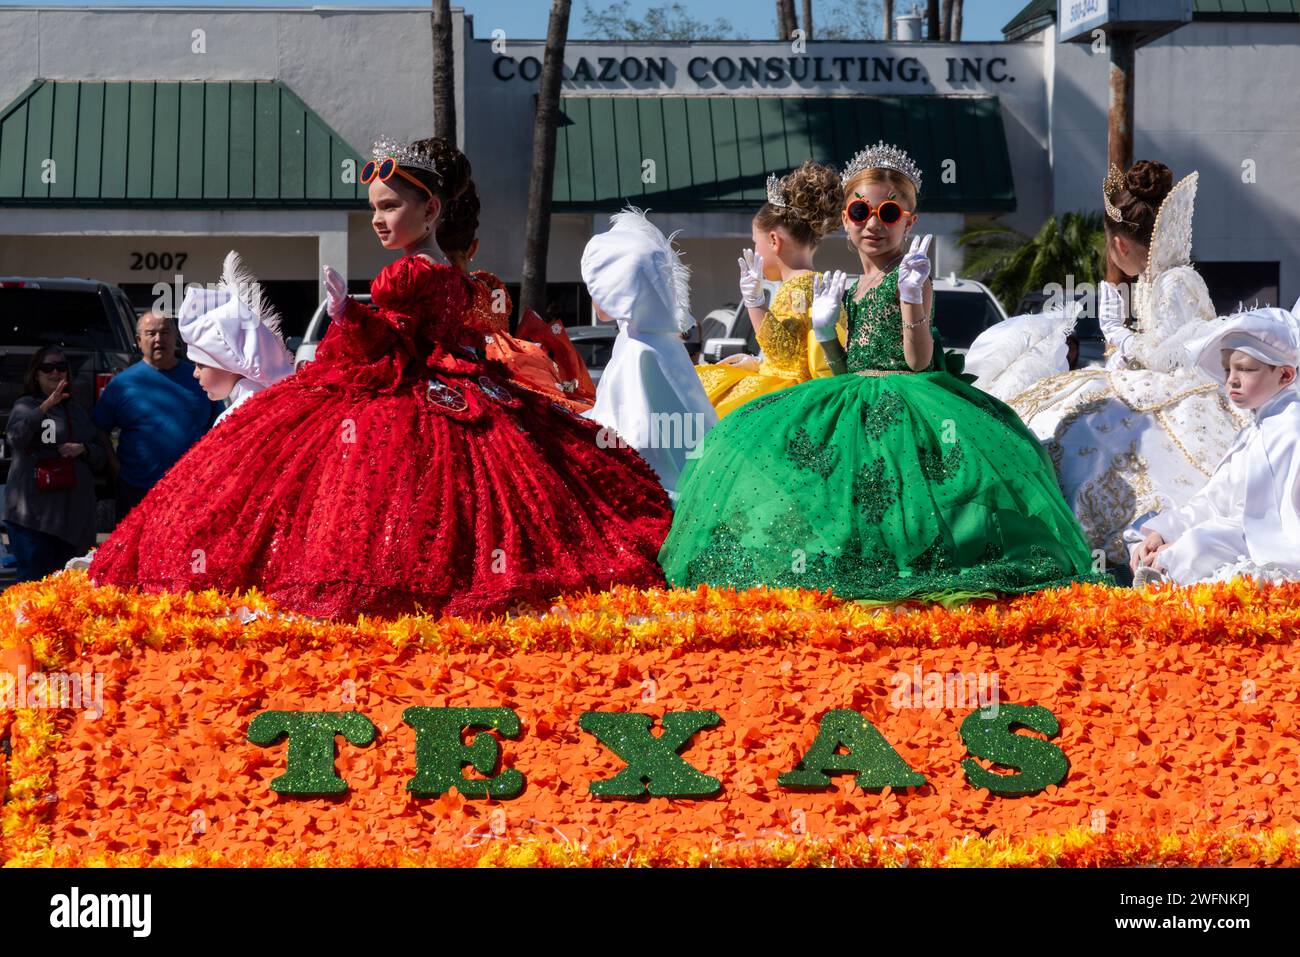 Junge Mädchen in bunten Kleidern am Rock winken der Menge bei der 92. Jährlichen Orangenparade der Texas Citrus Fiesta, Mission, TX, USA. Stockfoto